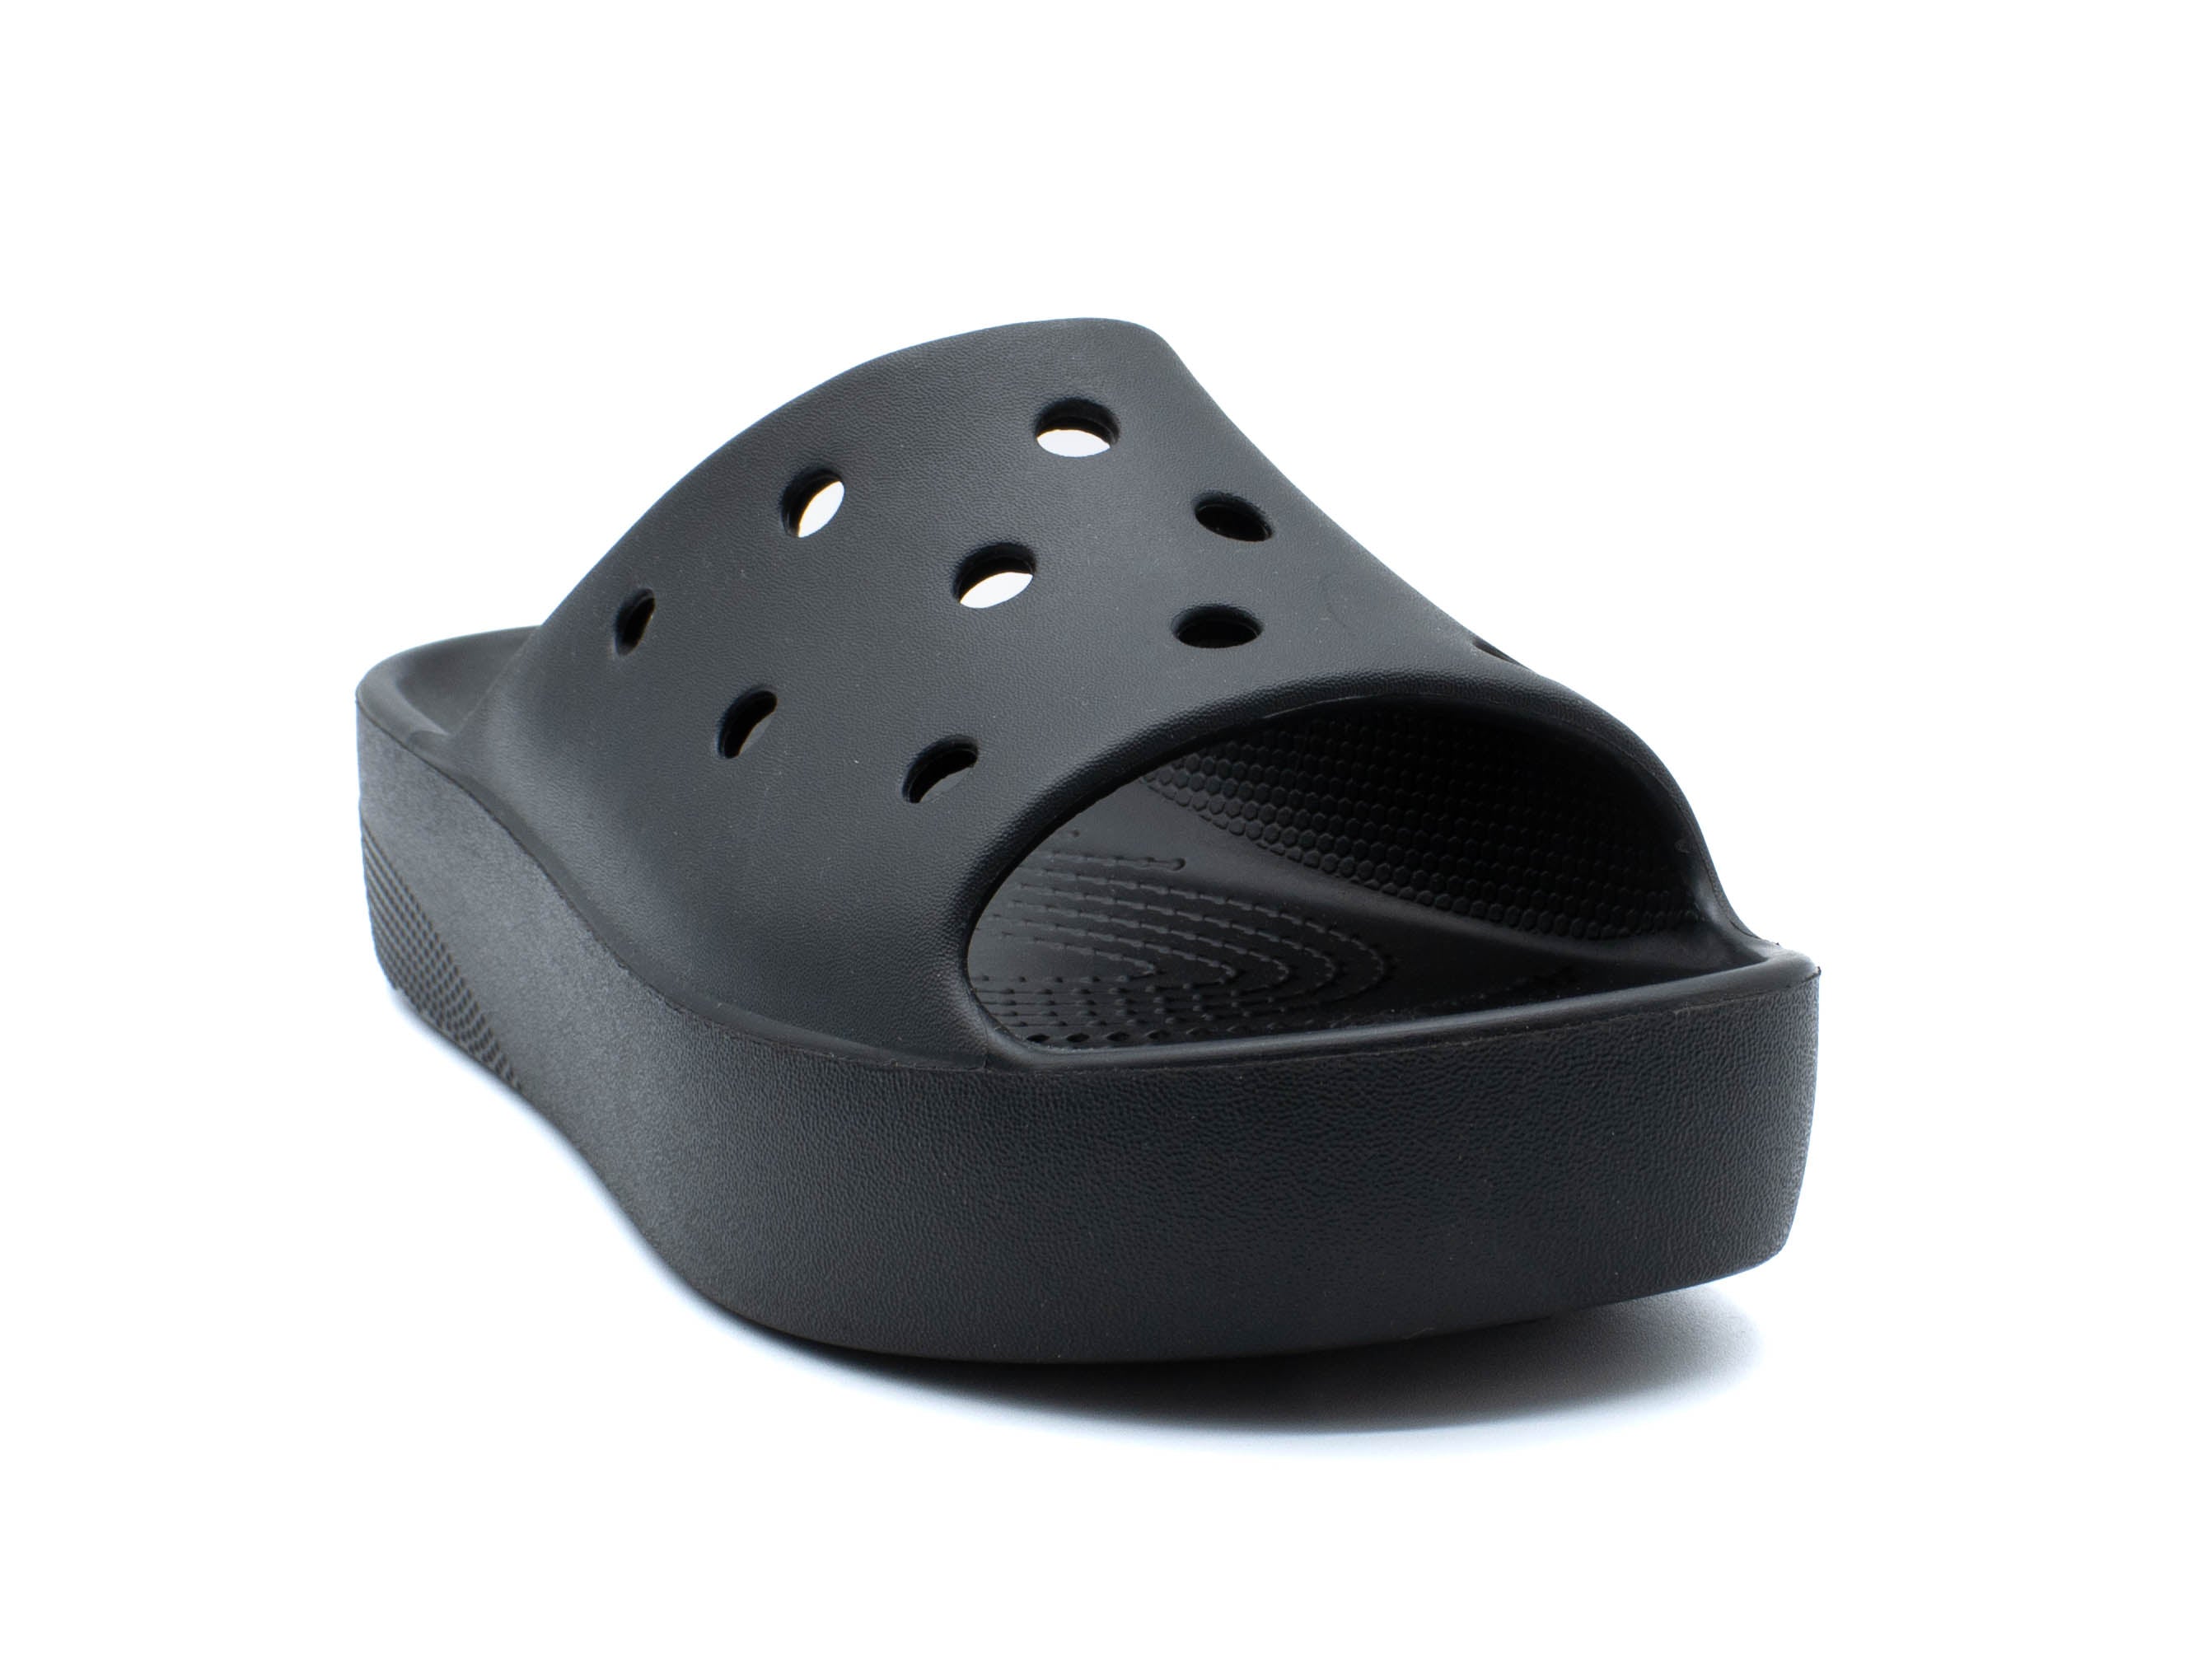 CROCS Classic Slide Sandal